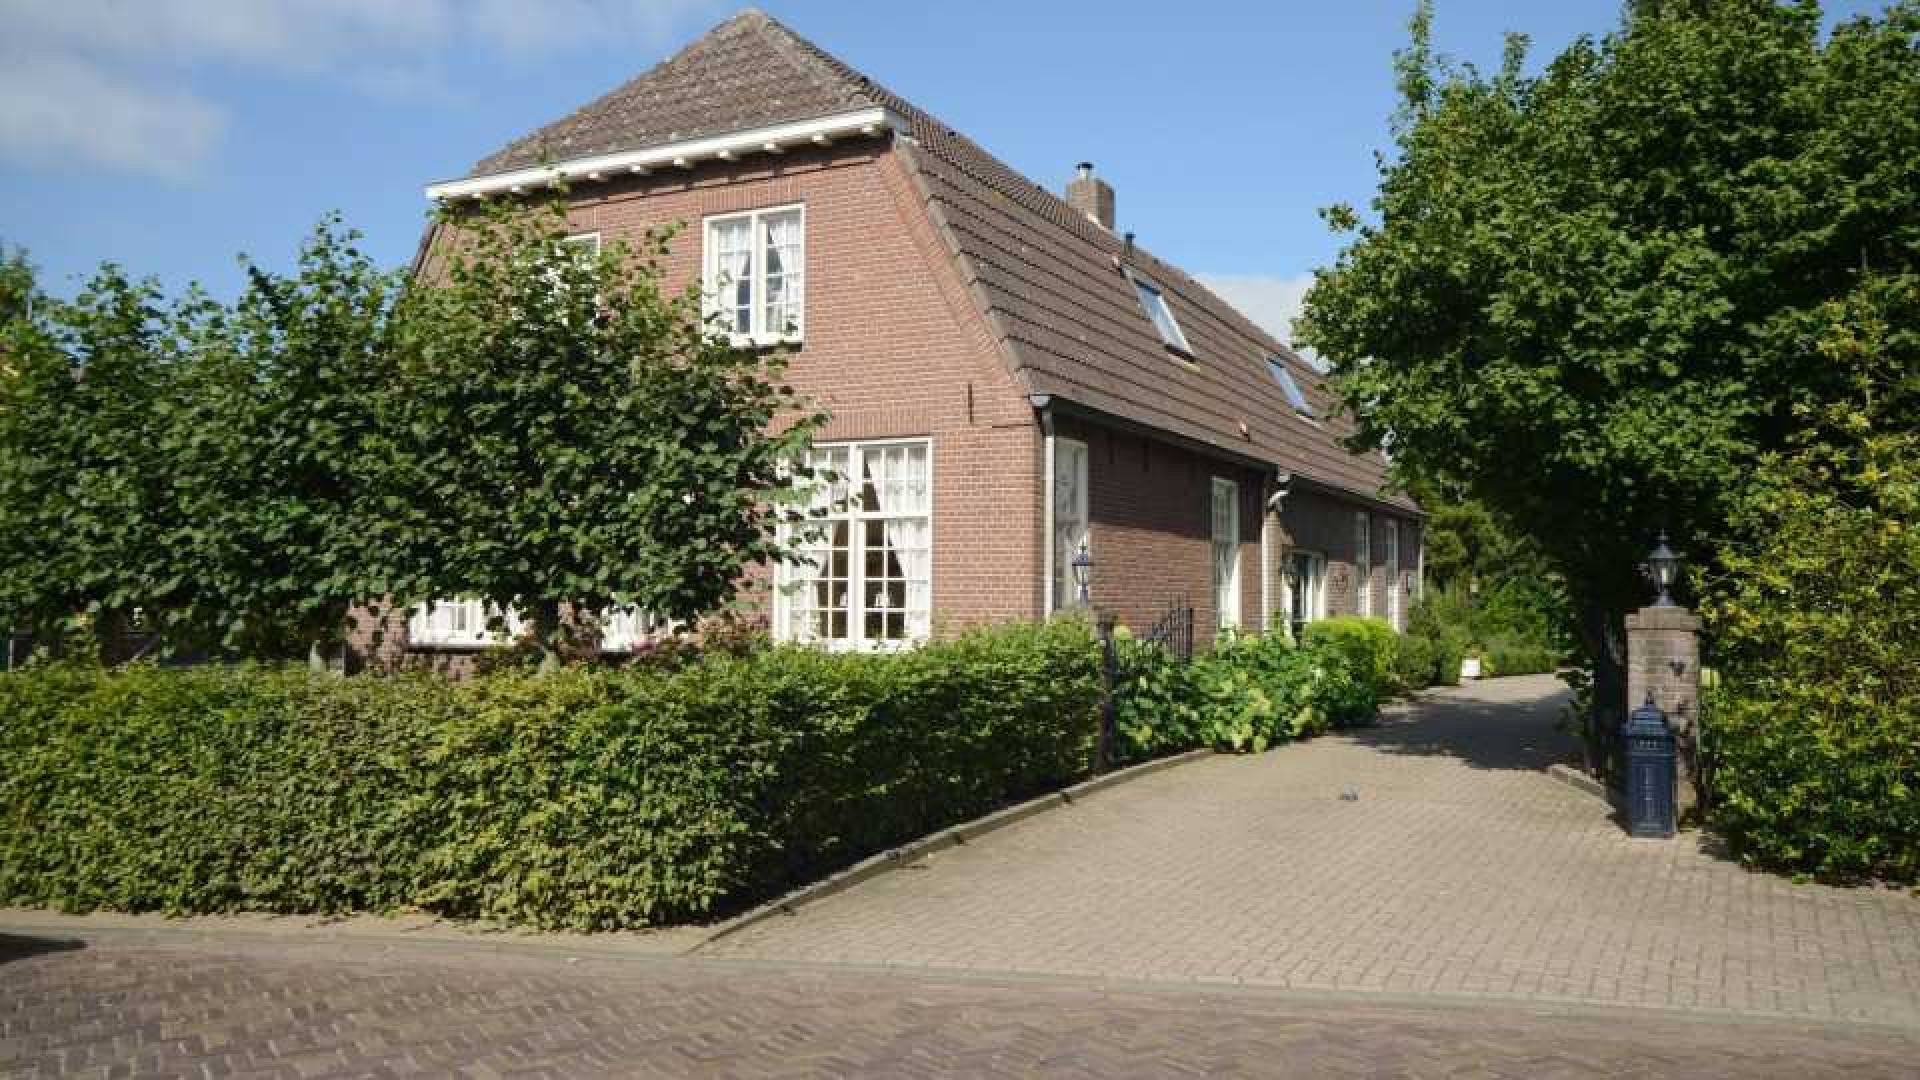 Michael van Gerwen huurt luxe woonboerderij. Zie foto's 2